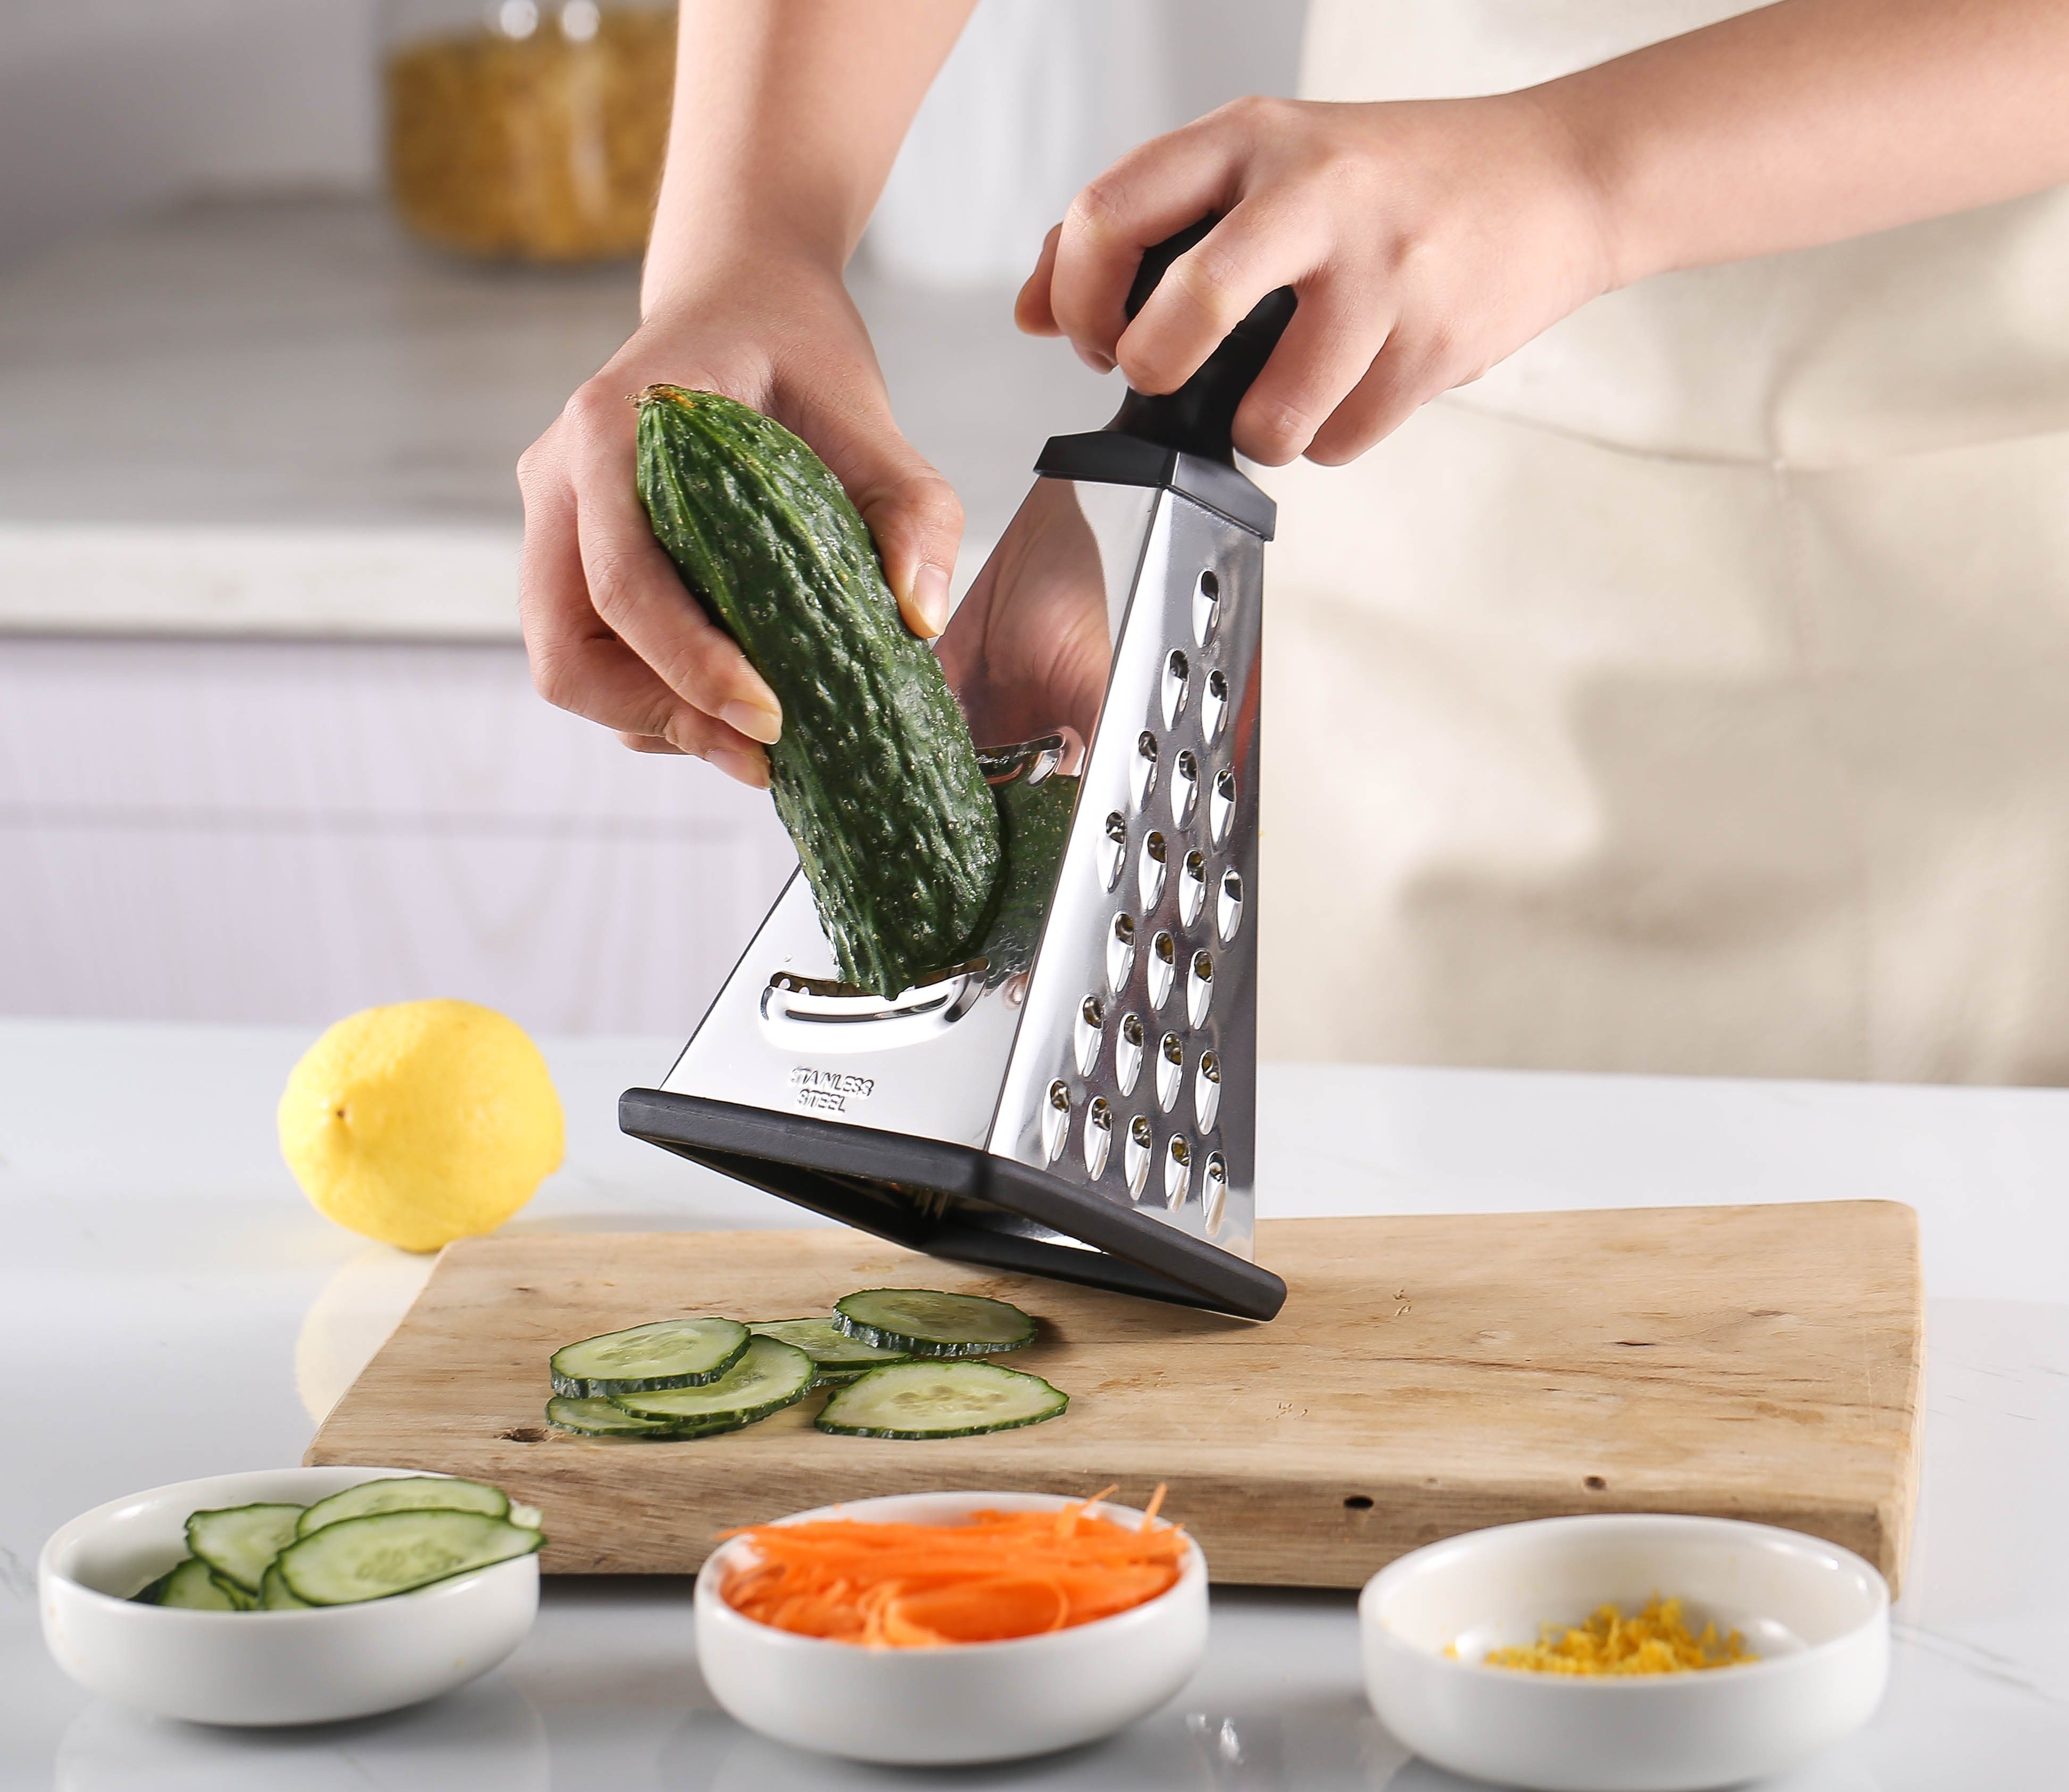 Kitchen Handheld 4 Sides Fruit Vegetable Grater Peeler Box Slicer